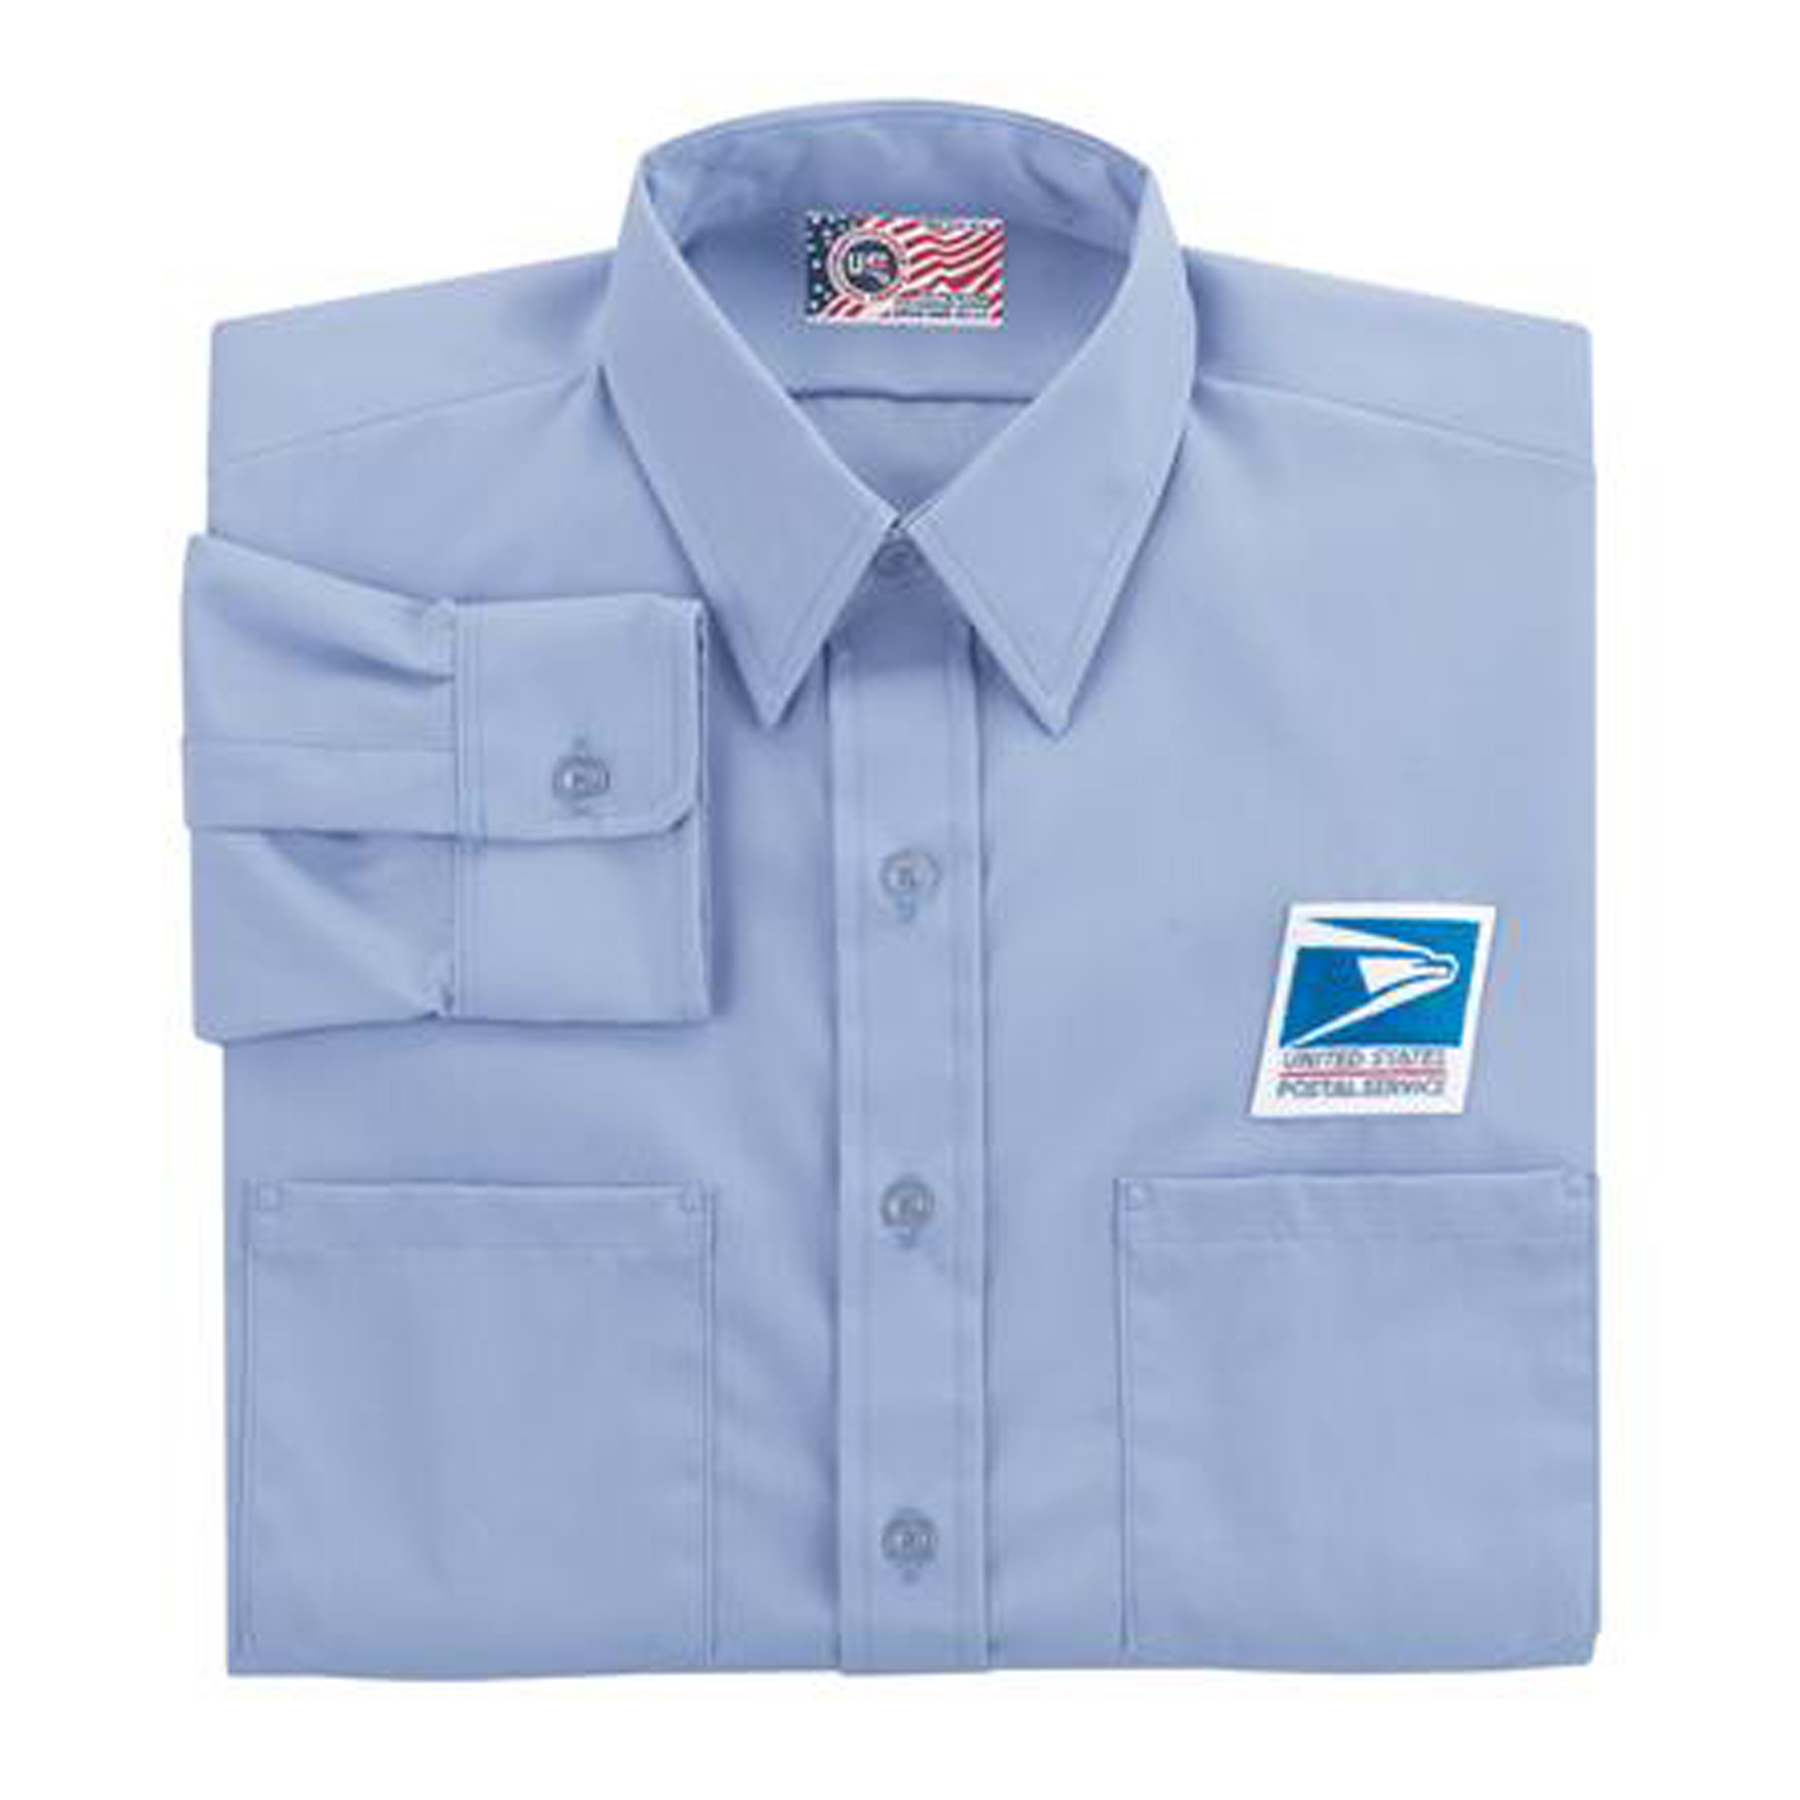 Letter Carrier Men's Long Sleeve Shirt